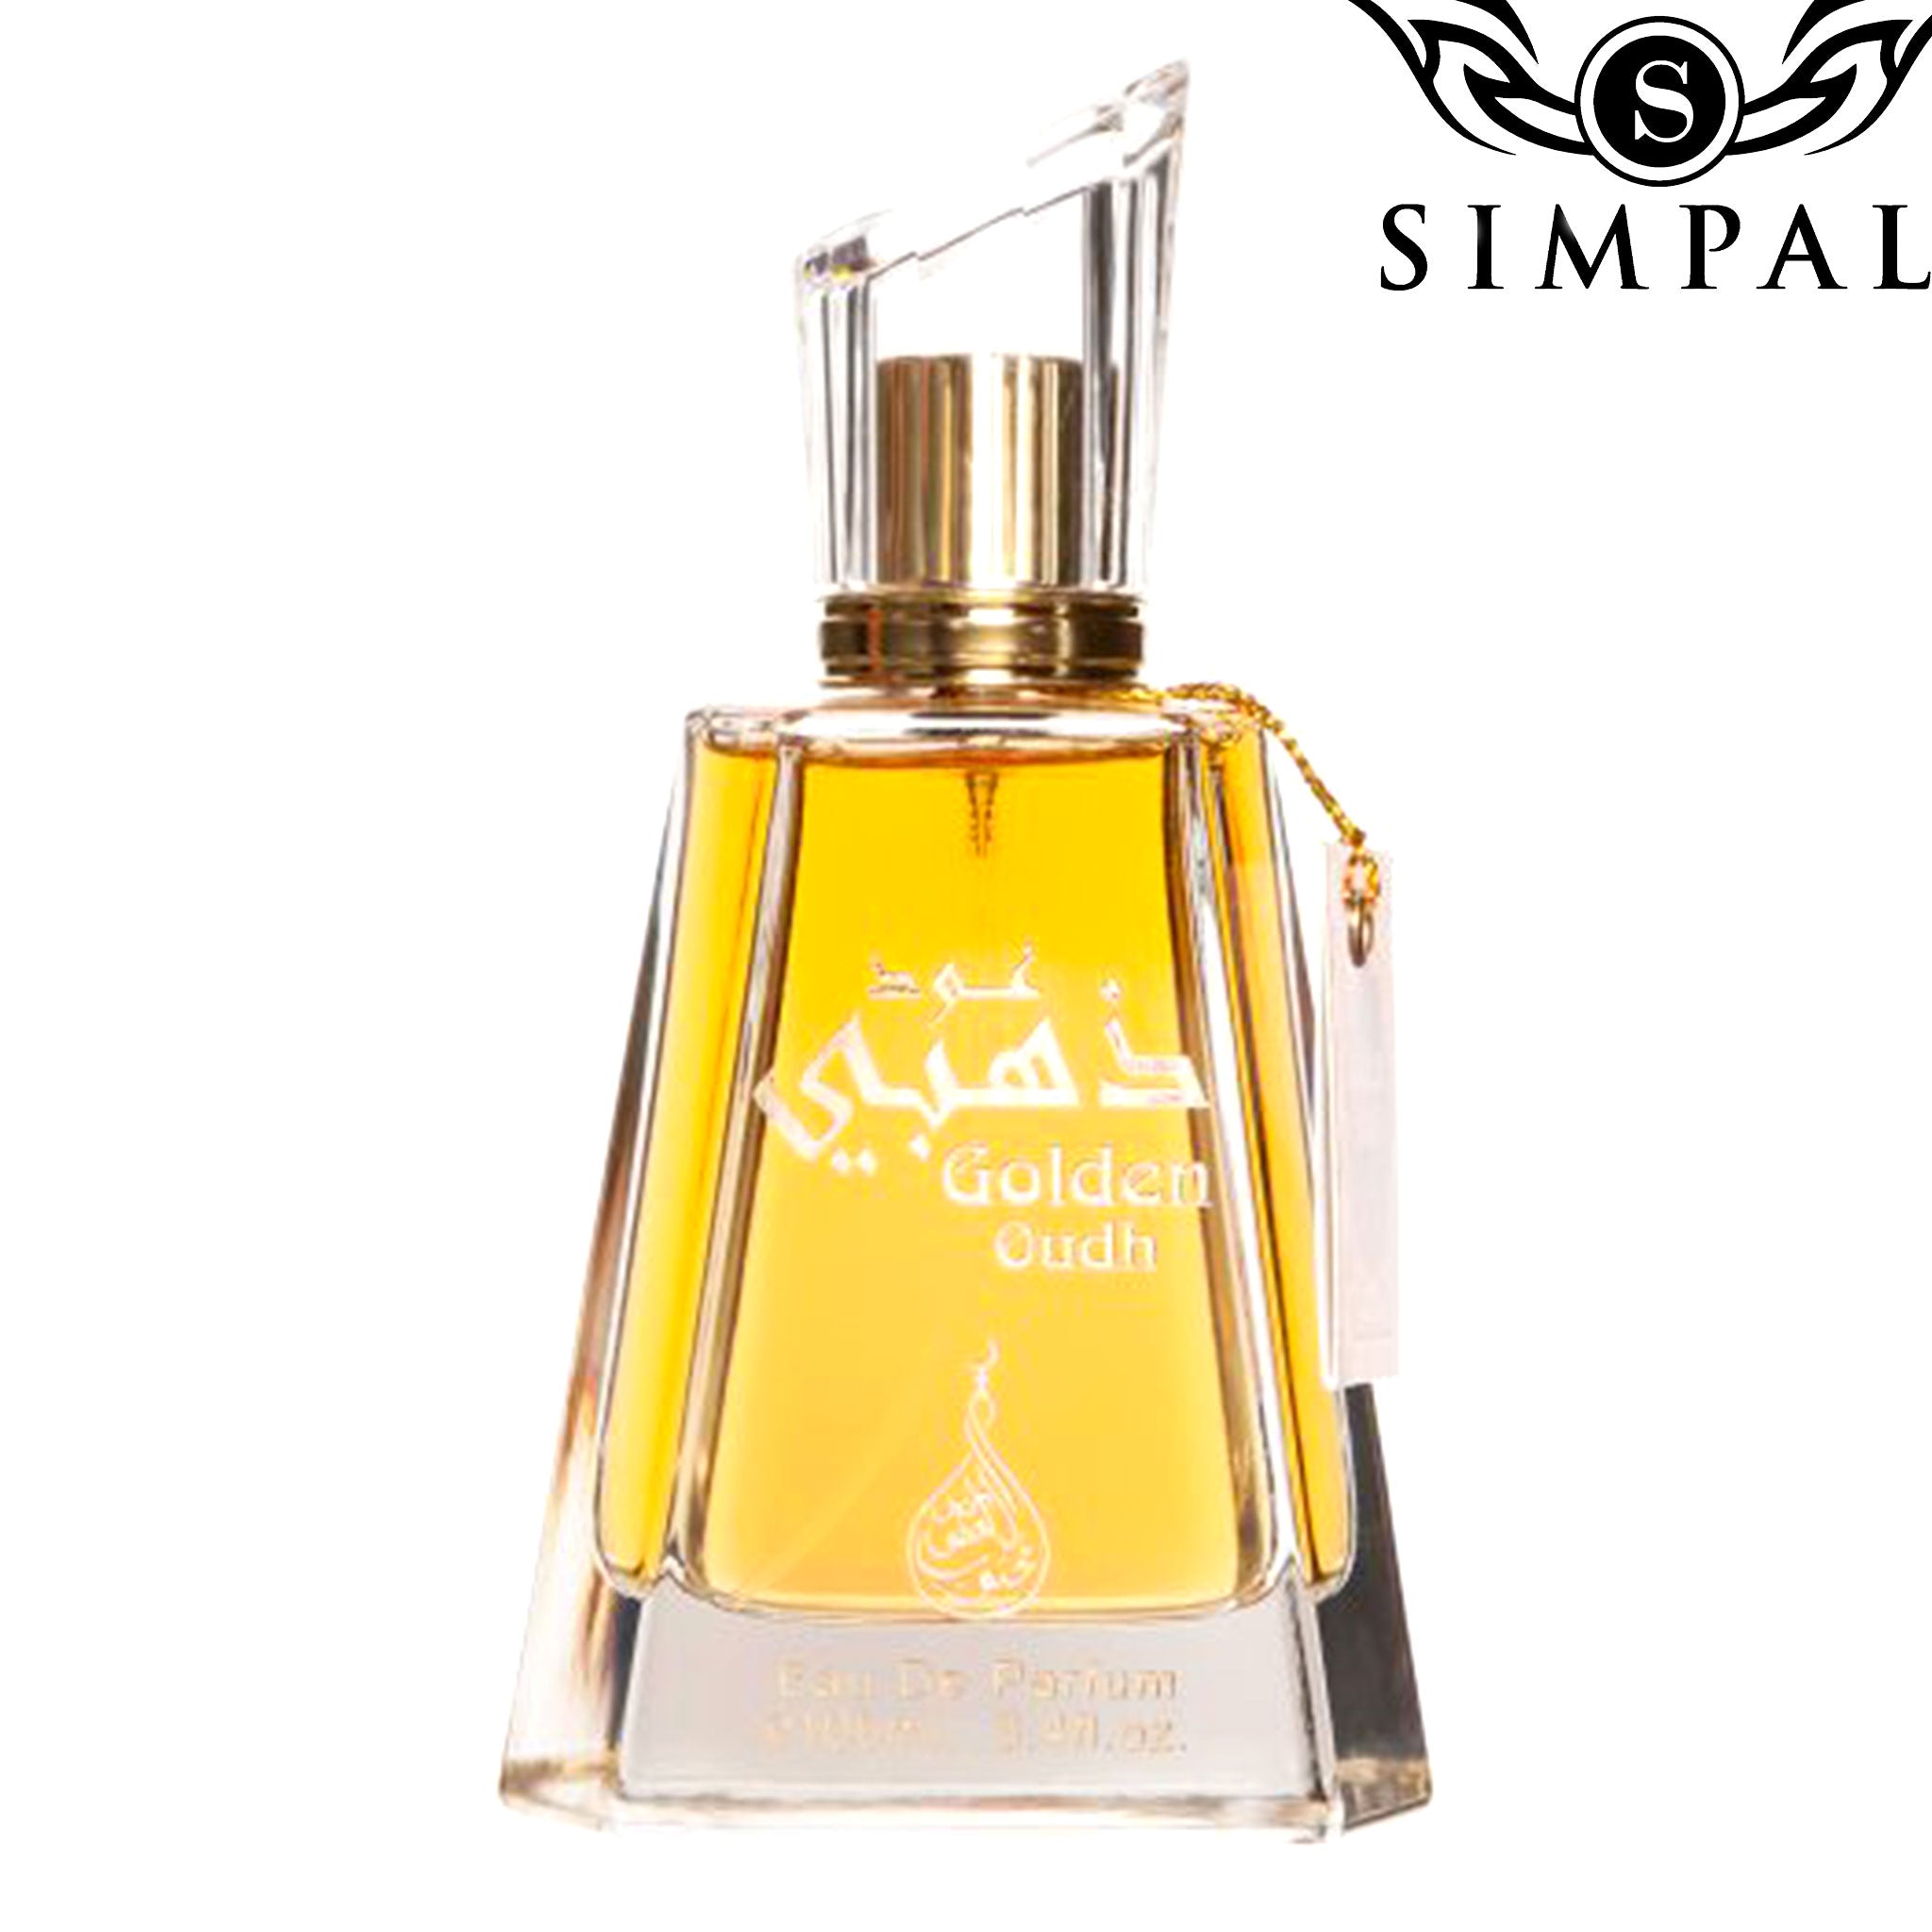 Golden Oud Eau De Parfum 100ml - Simpal Boutique